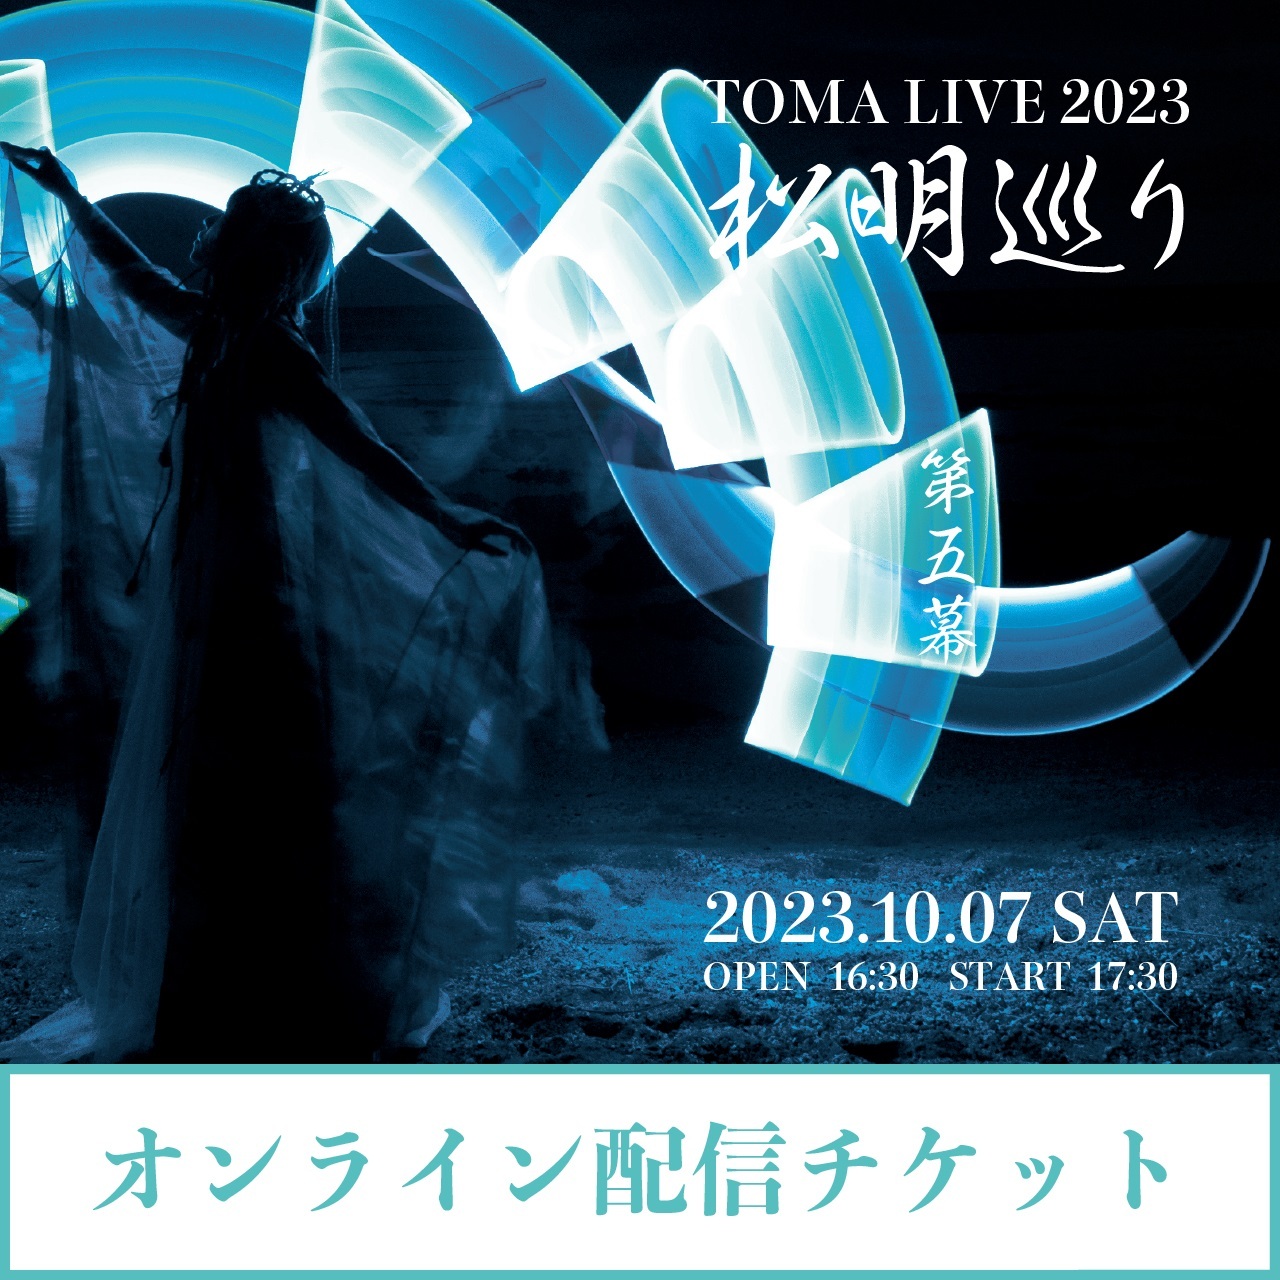 【オンライン配信チケット】TOMA LIVE 2023 『松明巡り』 第五幕